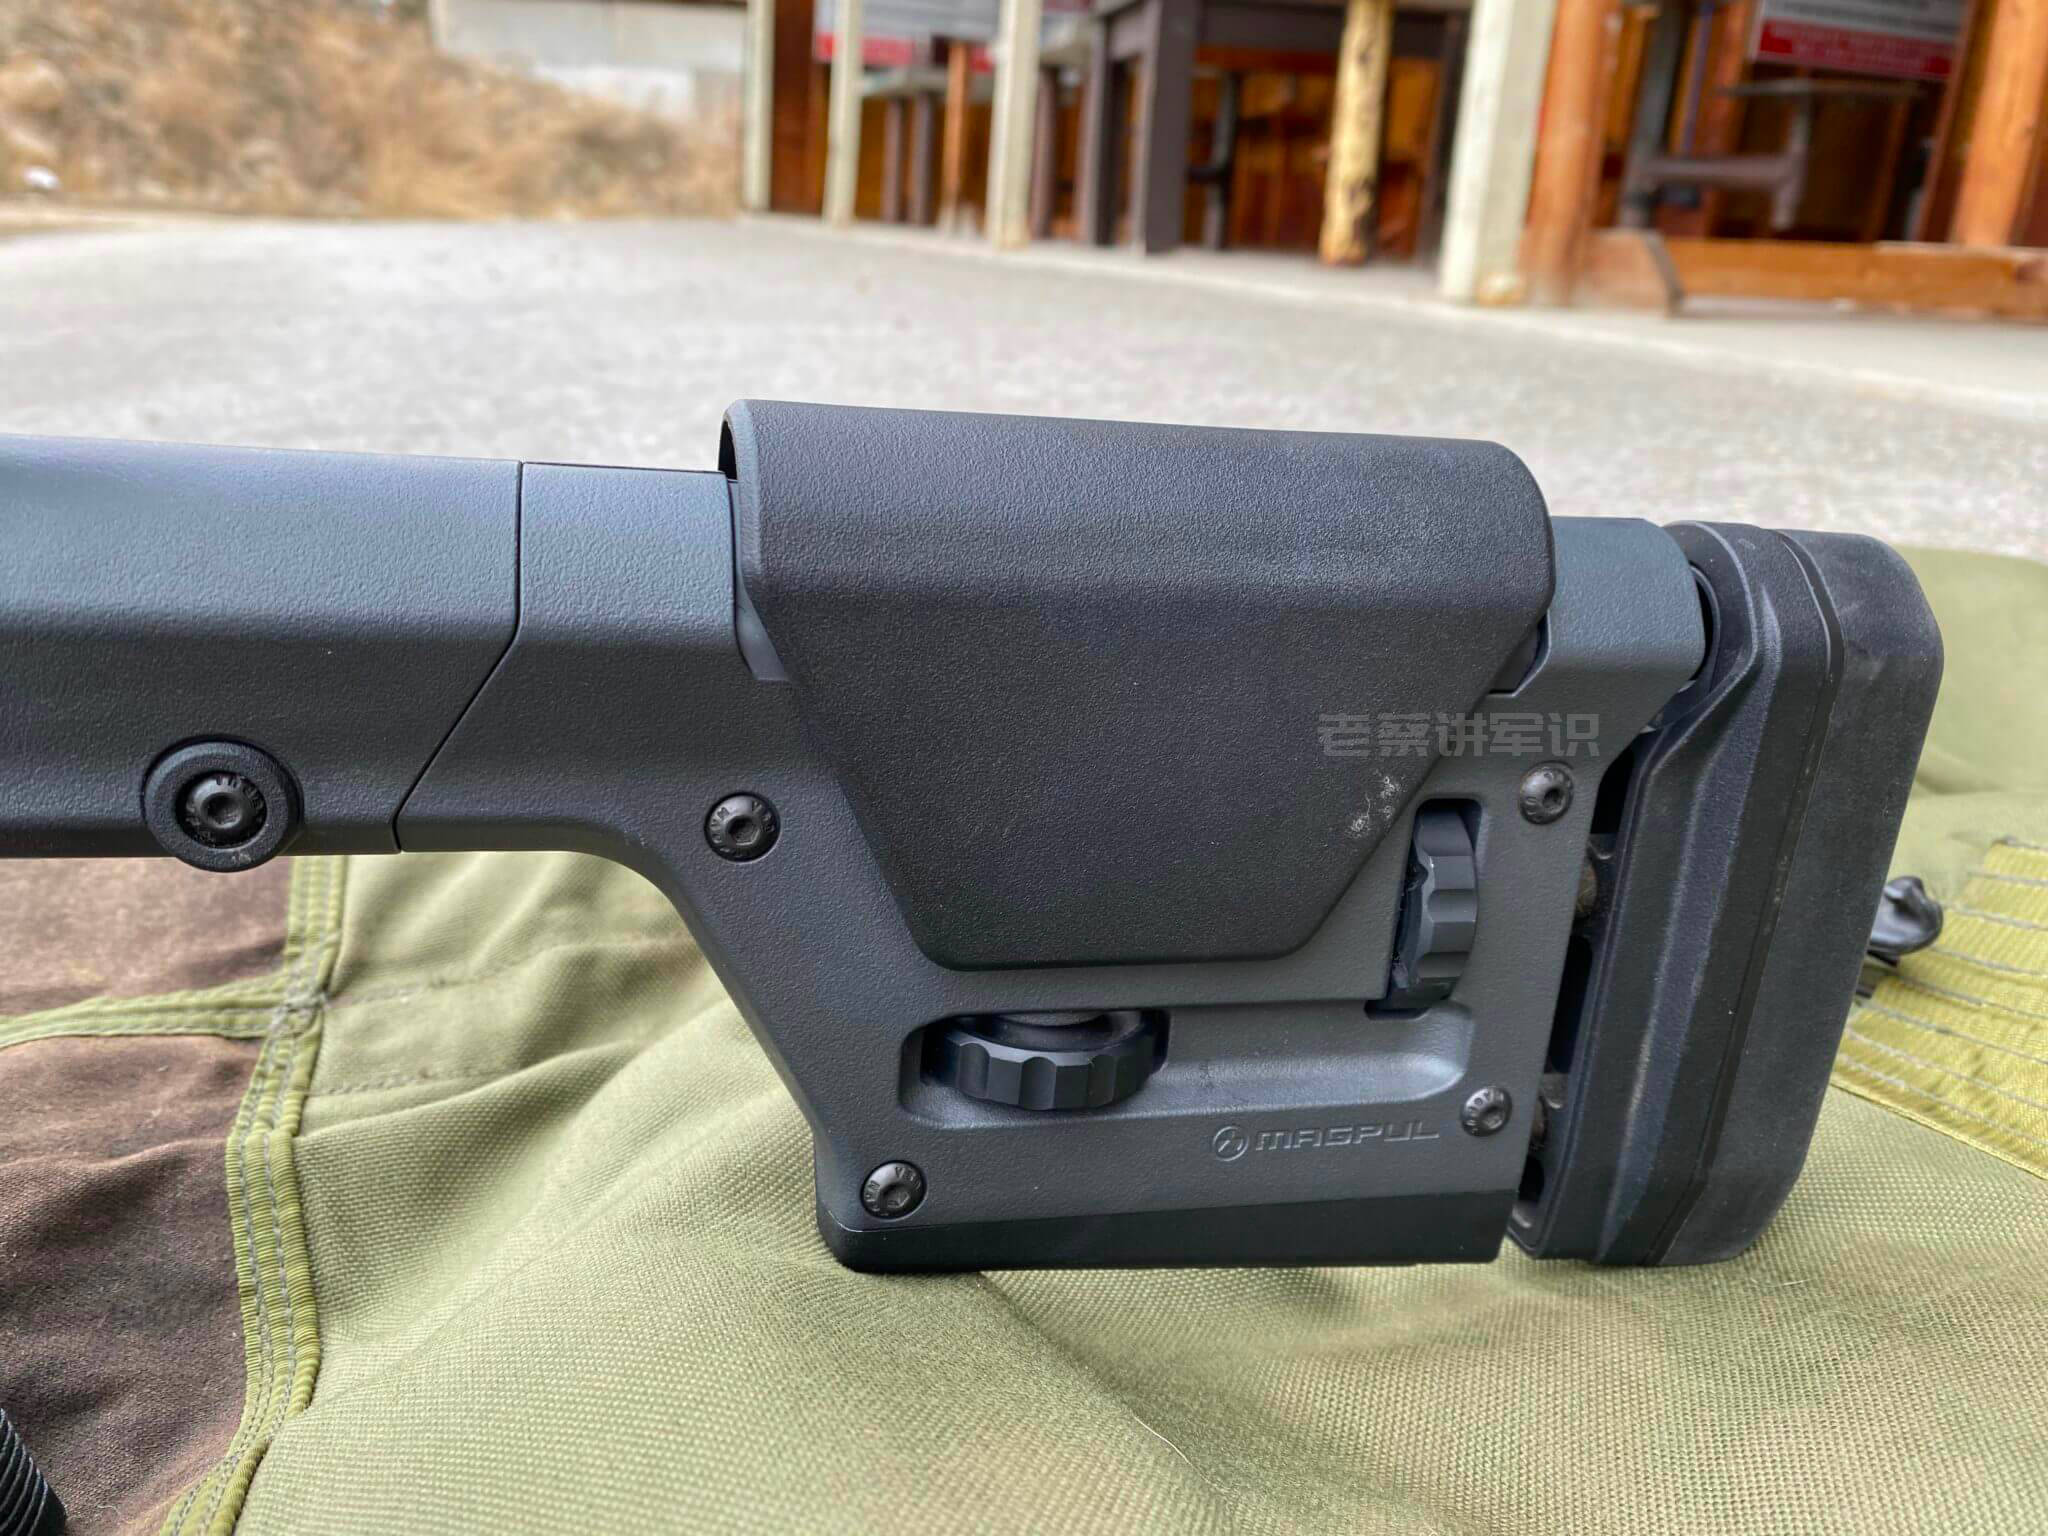 枪托采用magpul prs gen3免工具可调的固定式枪托,可免工具调节枪托